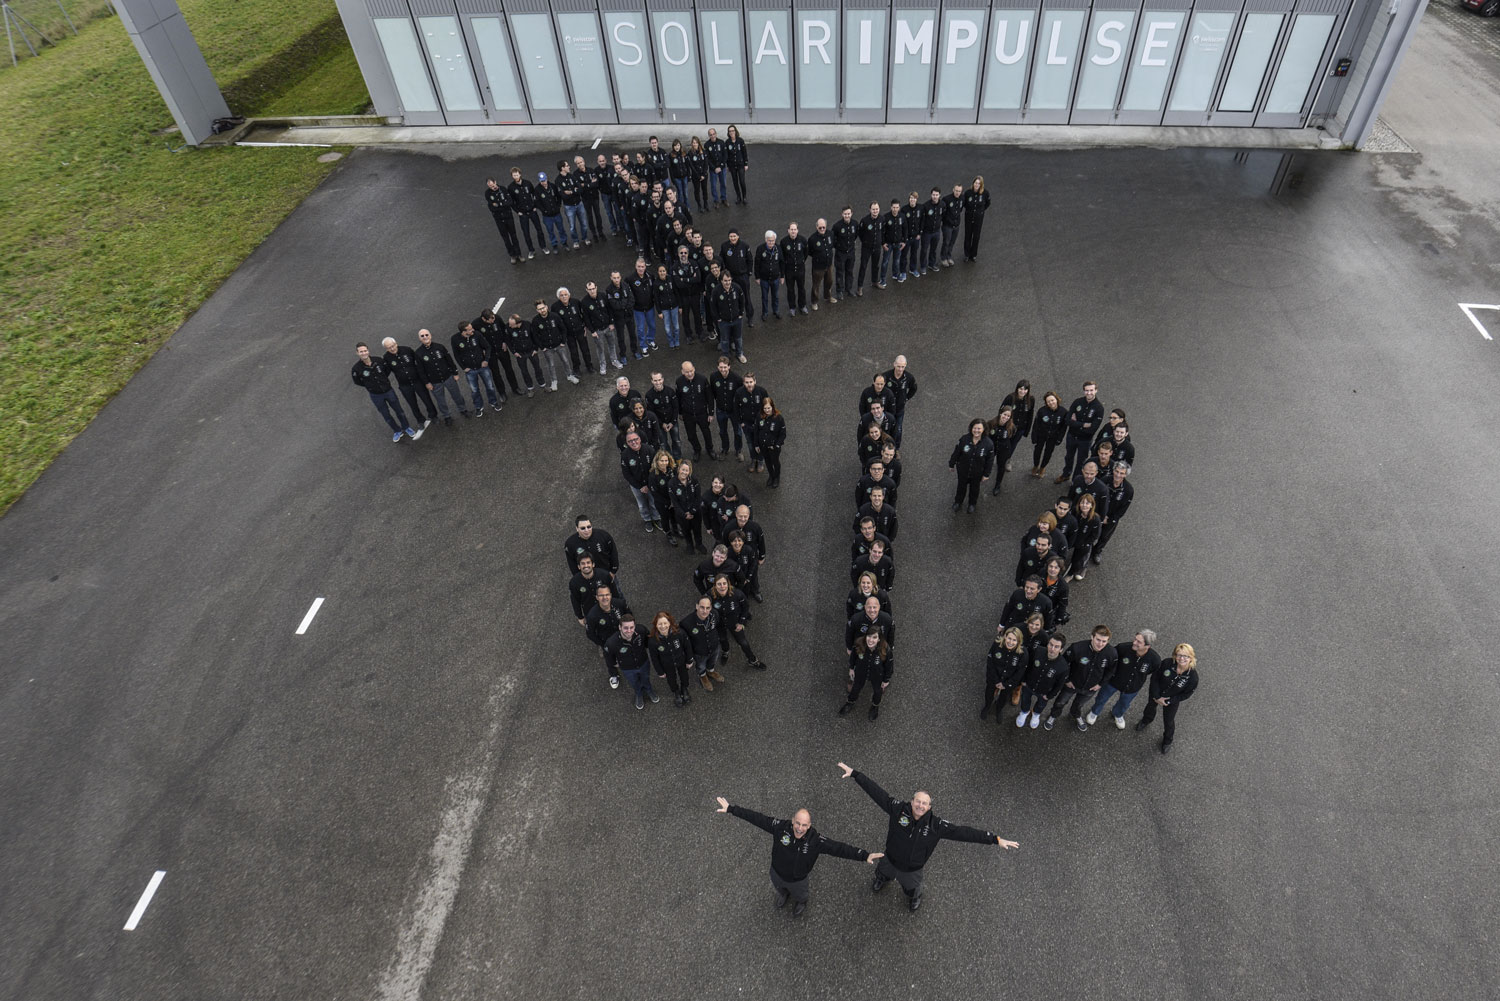 Toute l’équipe du Solar Impulse 2 s’est alignée pour faire la forme de l’avion, du sigle SI2 et devant l’équipe réunie au complet, Bertrand PICCARD et André BORSCHBERG, les deux pilotes © Solar Impulse